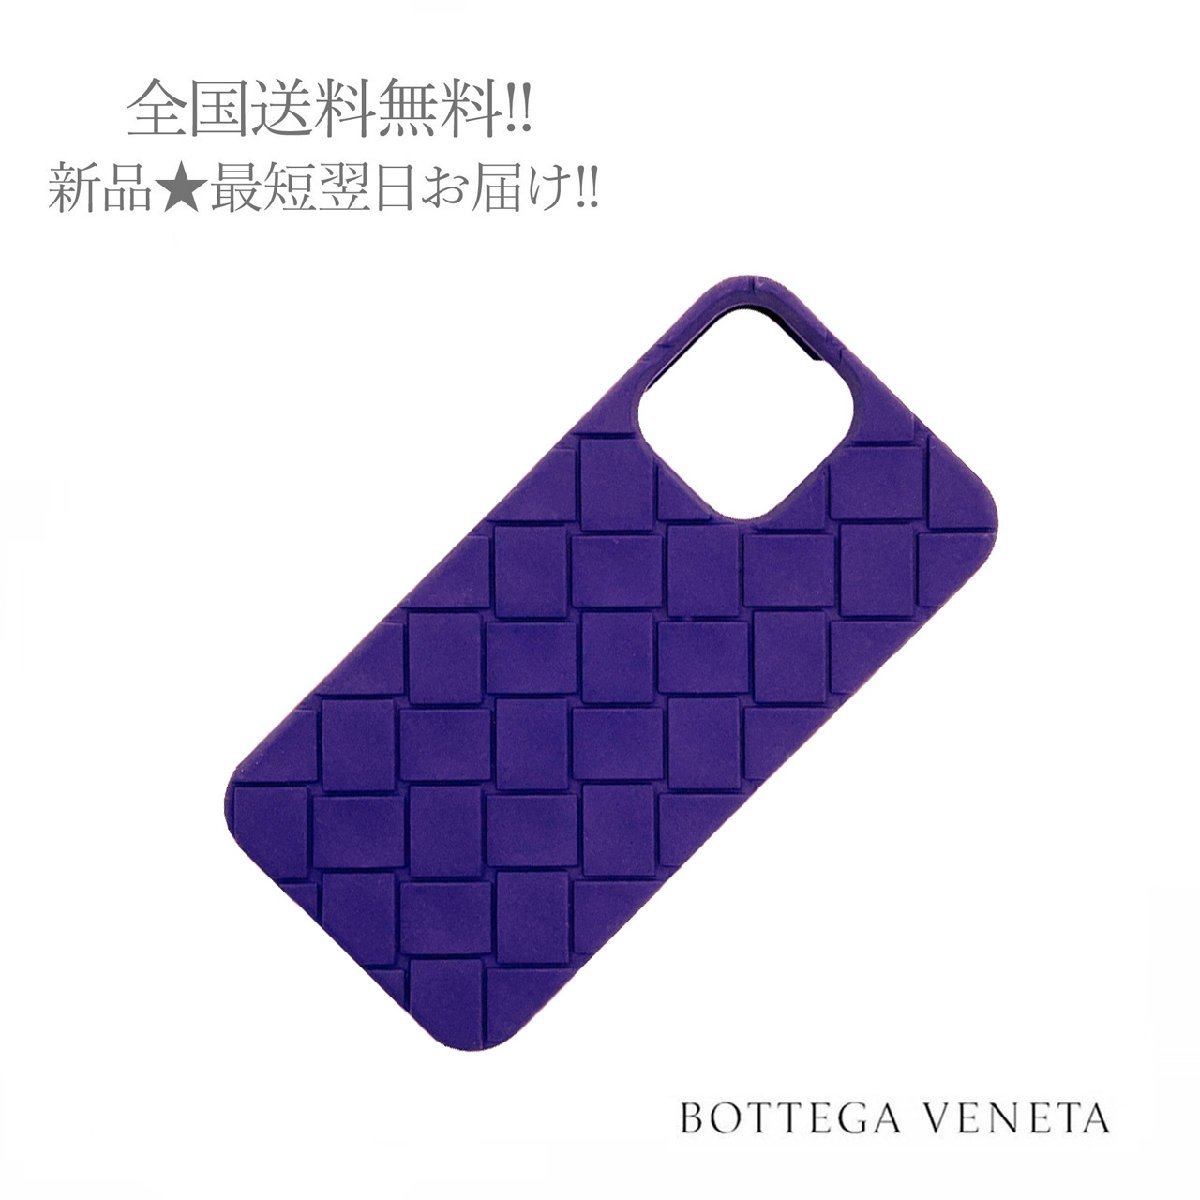 税込) Pro 13 iPhone ヴェネタ ボッテガ VENETA BOTTEGA K003.. MAX